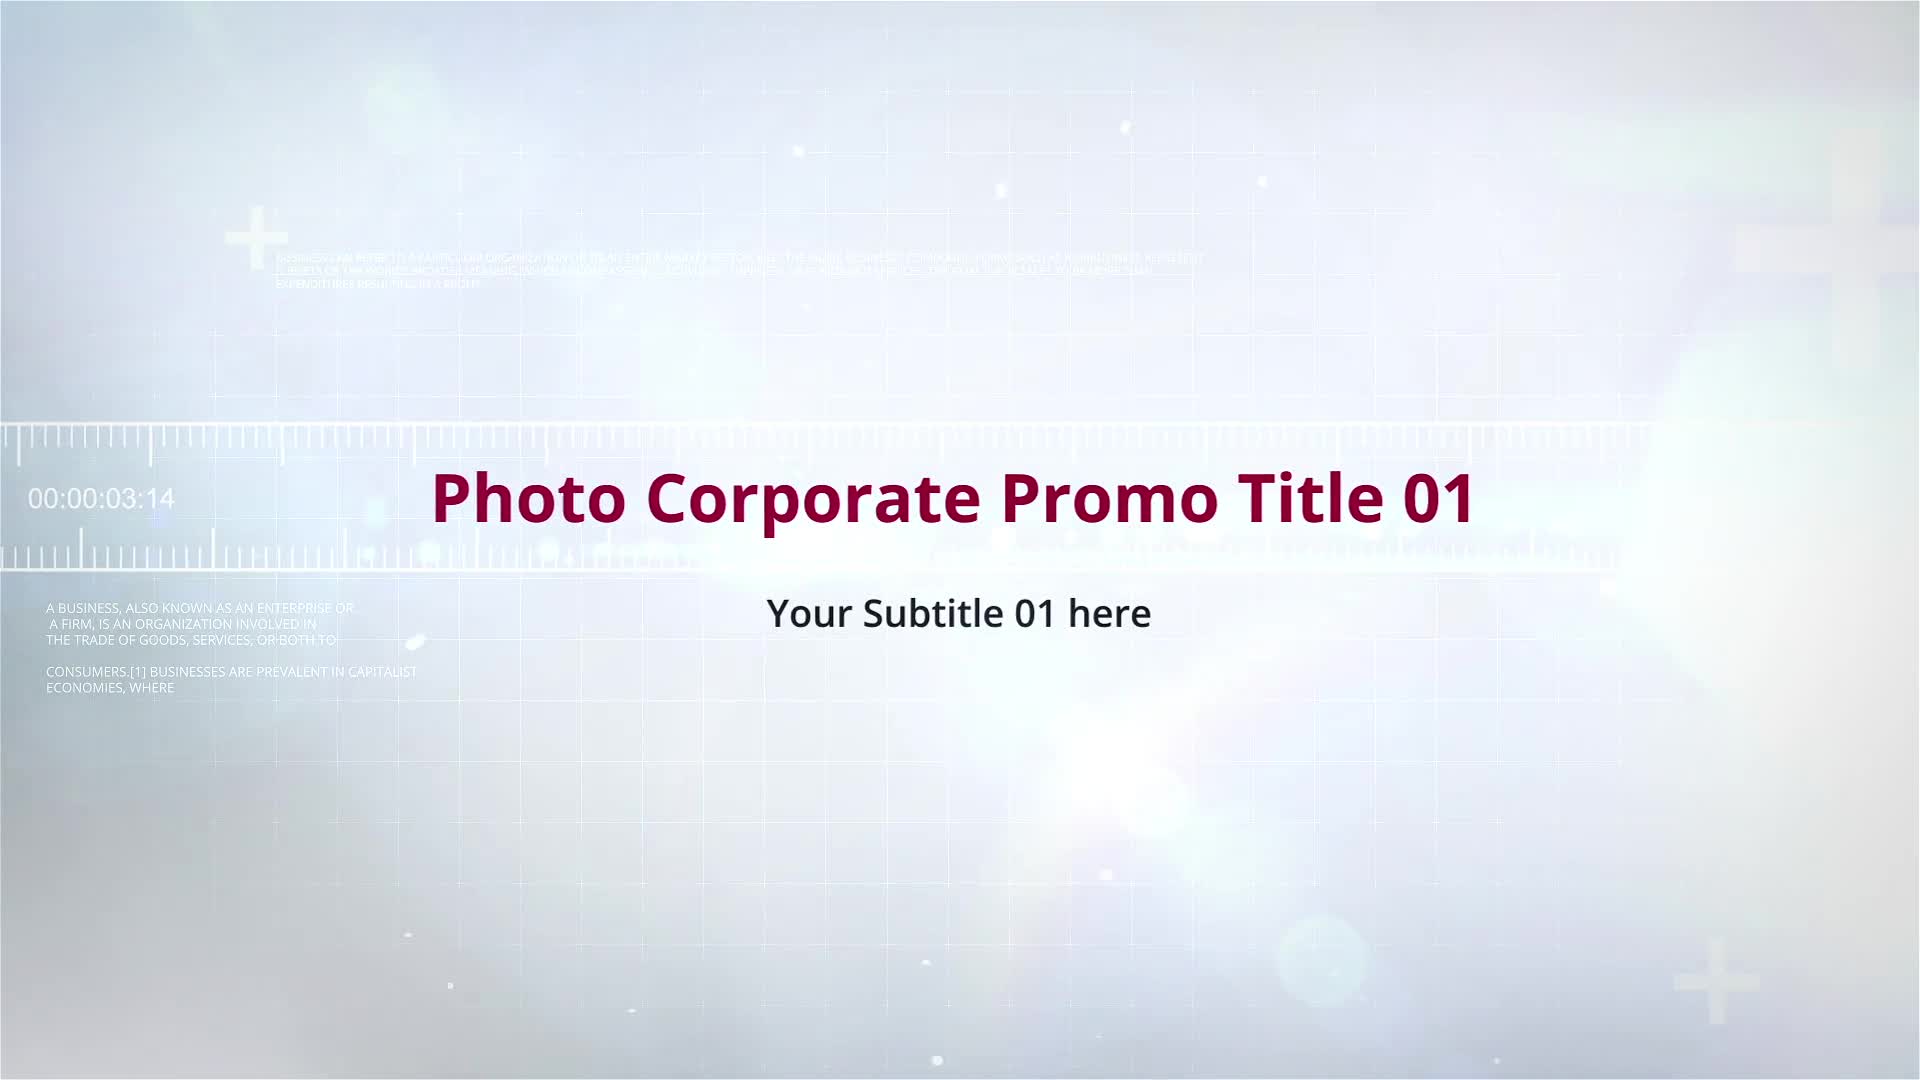 Photo Corporate Promo Videohive 32890001 Premiere Pro Image 1